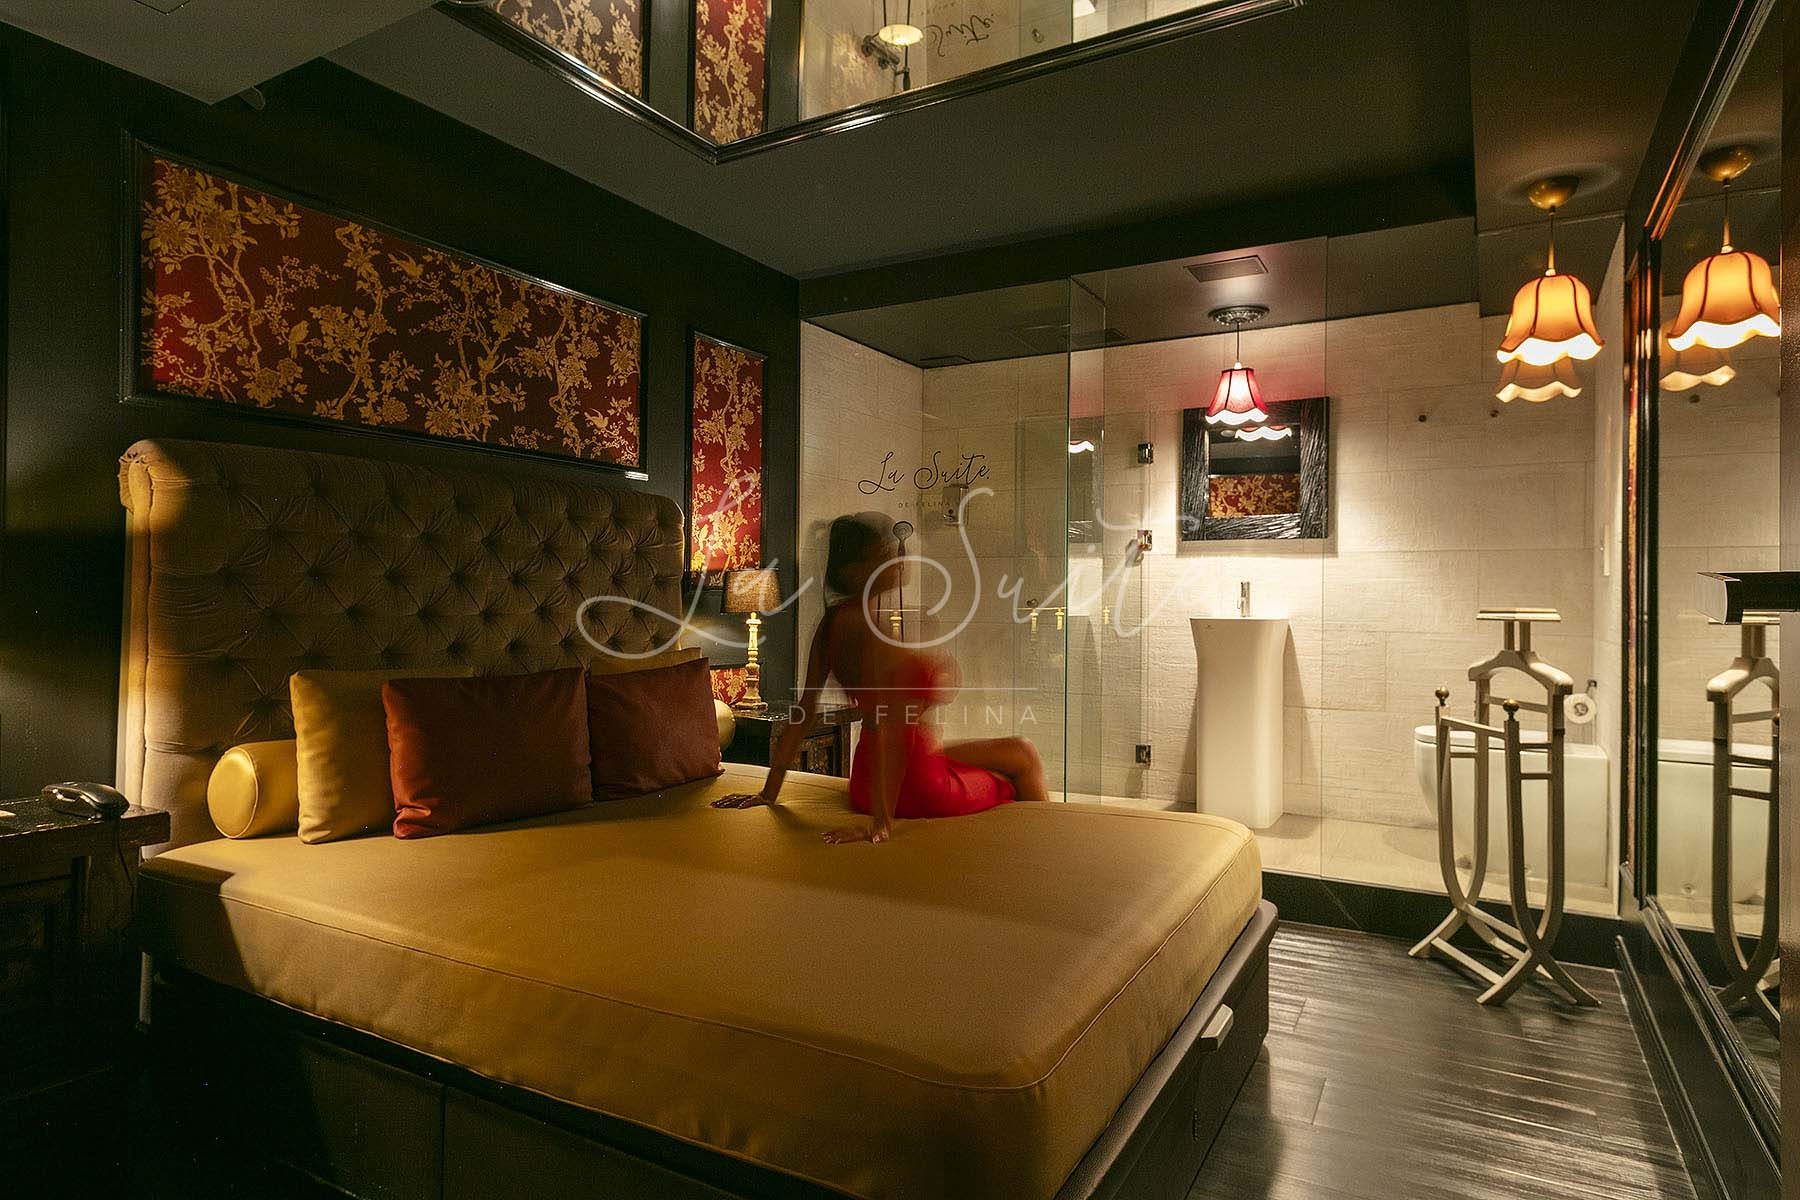 Salon de beauté moderne, de style victorien avec des ornements dorés et des finitions en bois, avec une douche à l'infini, dans La Suite, Barcelone